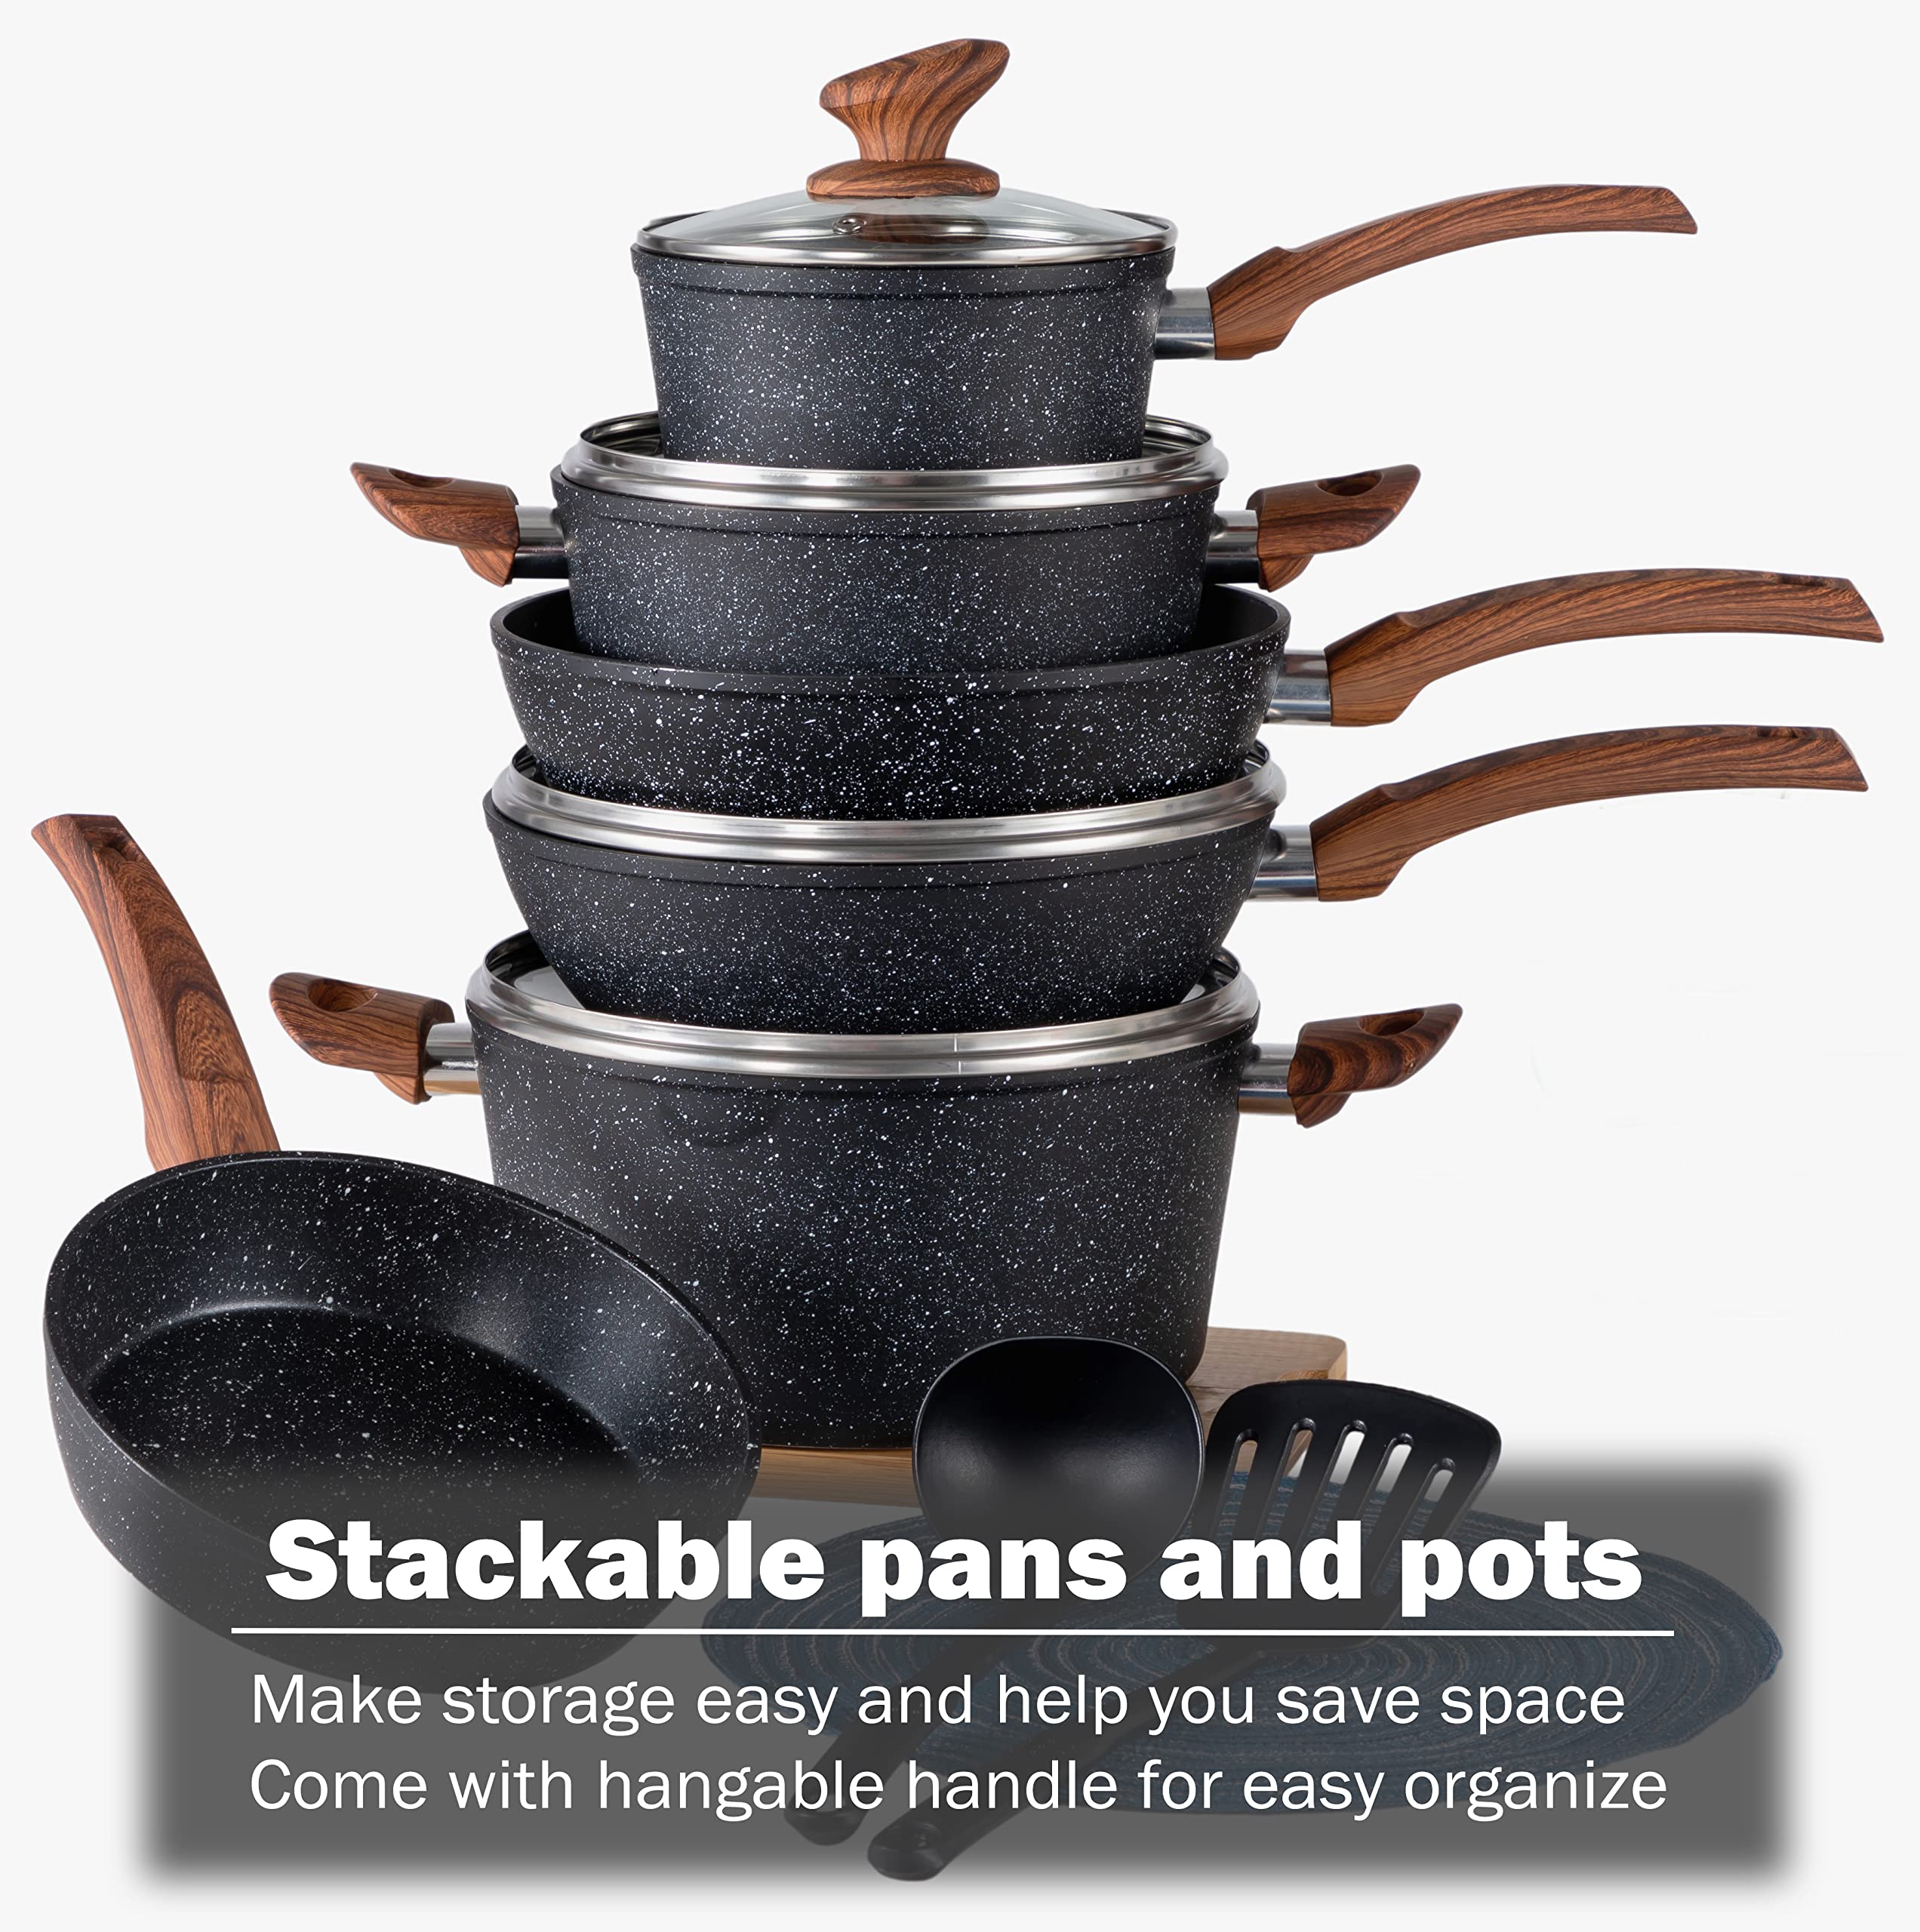 Granitestone 6 Piece Nonstick Stackable Bakeware Set - Black